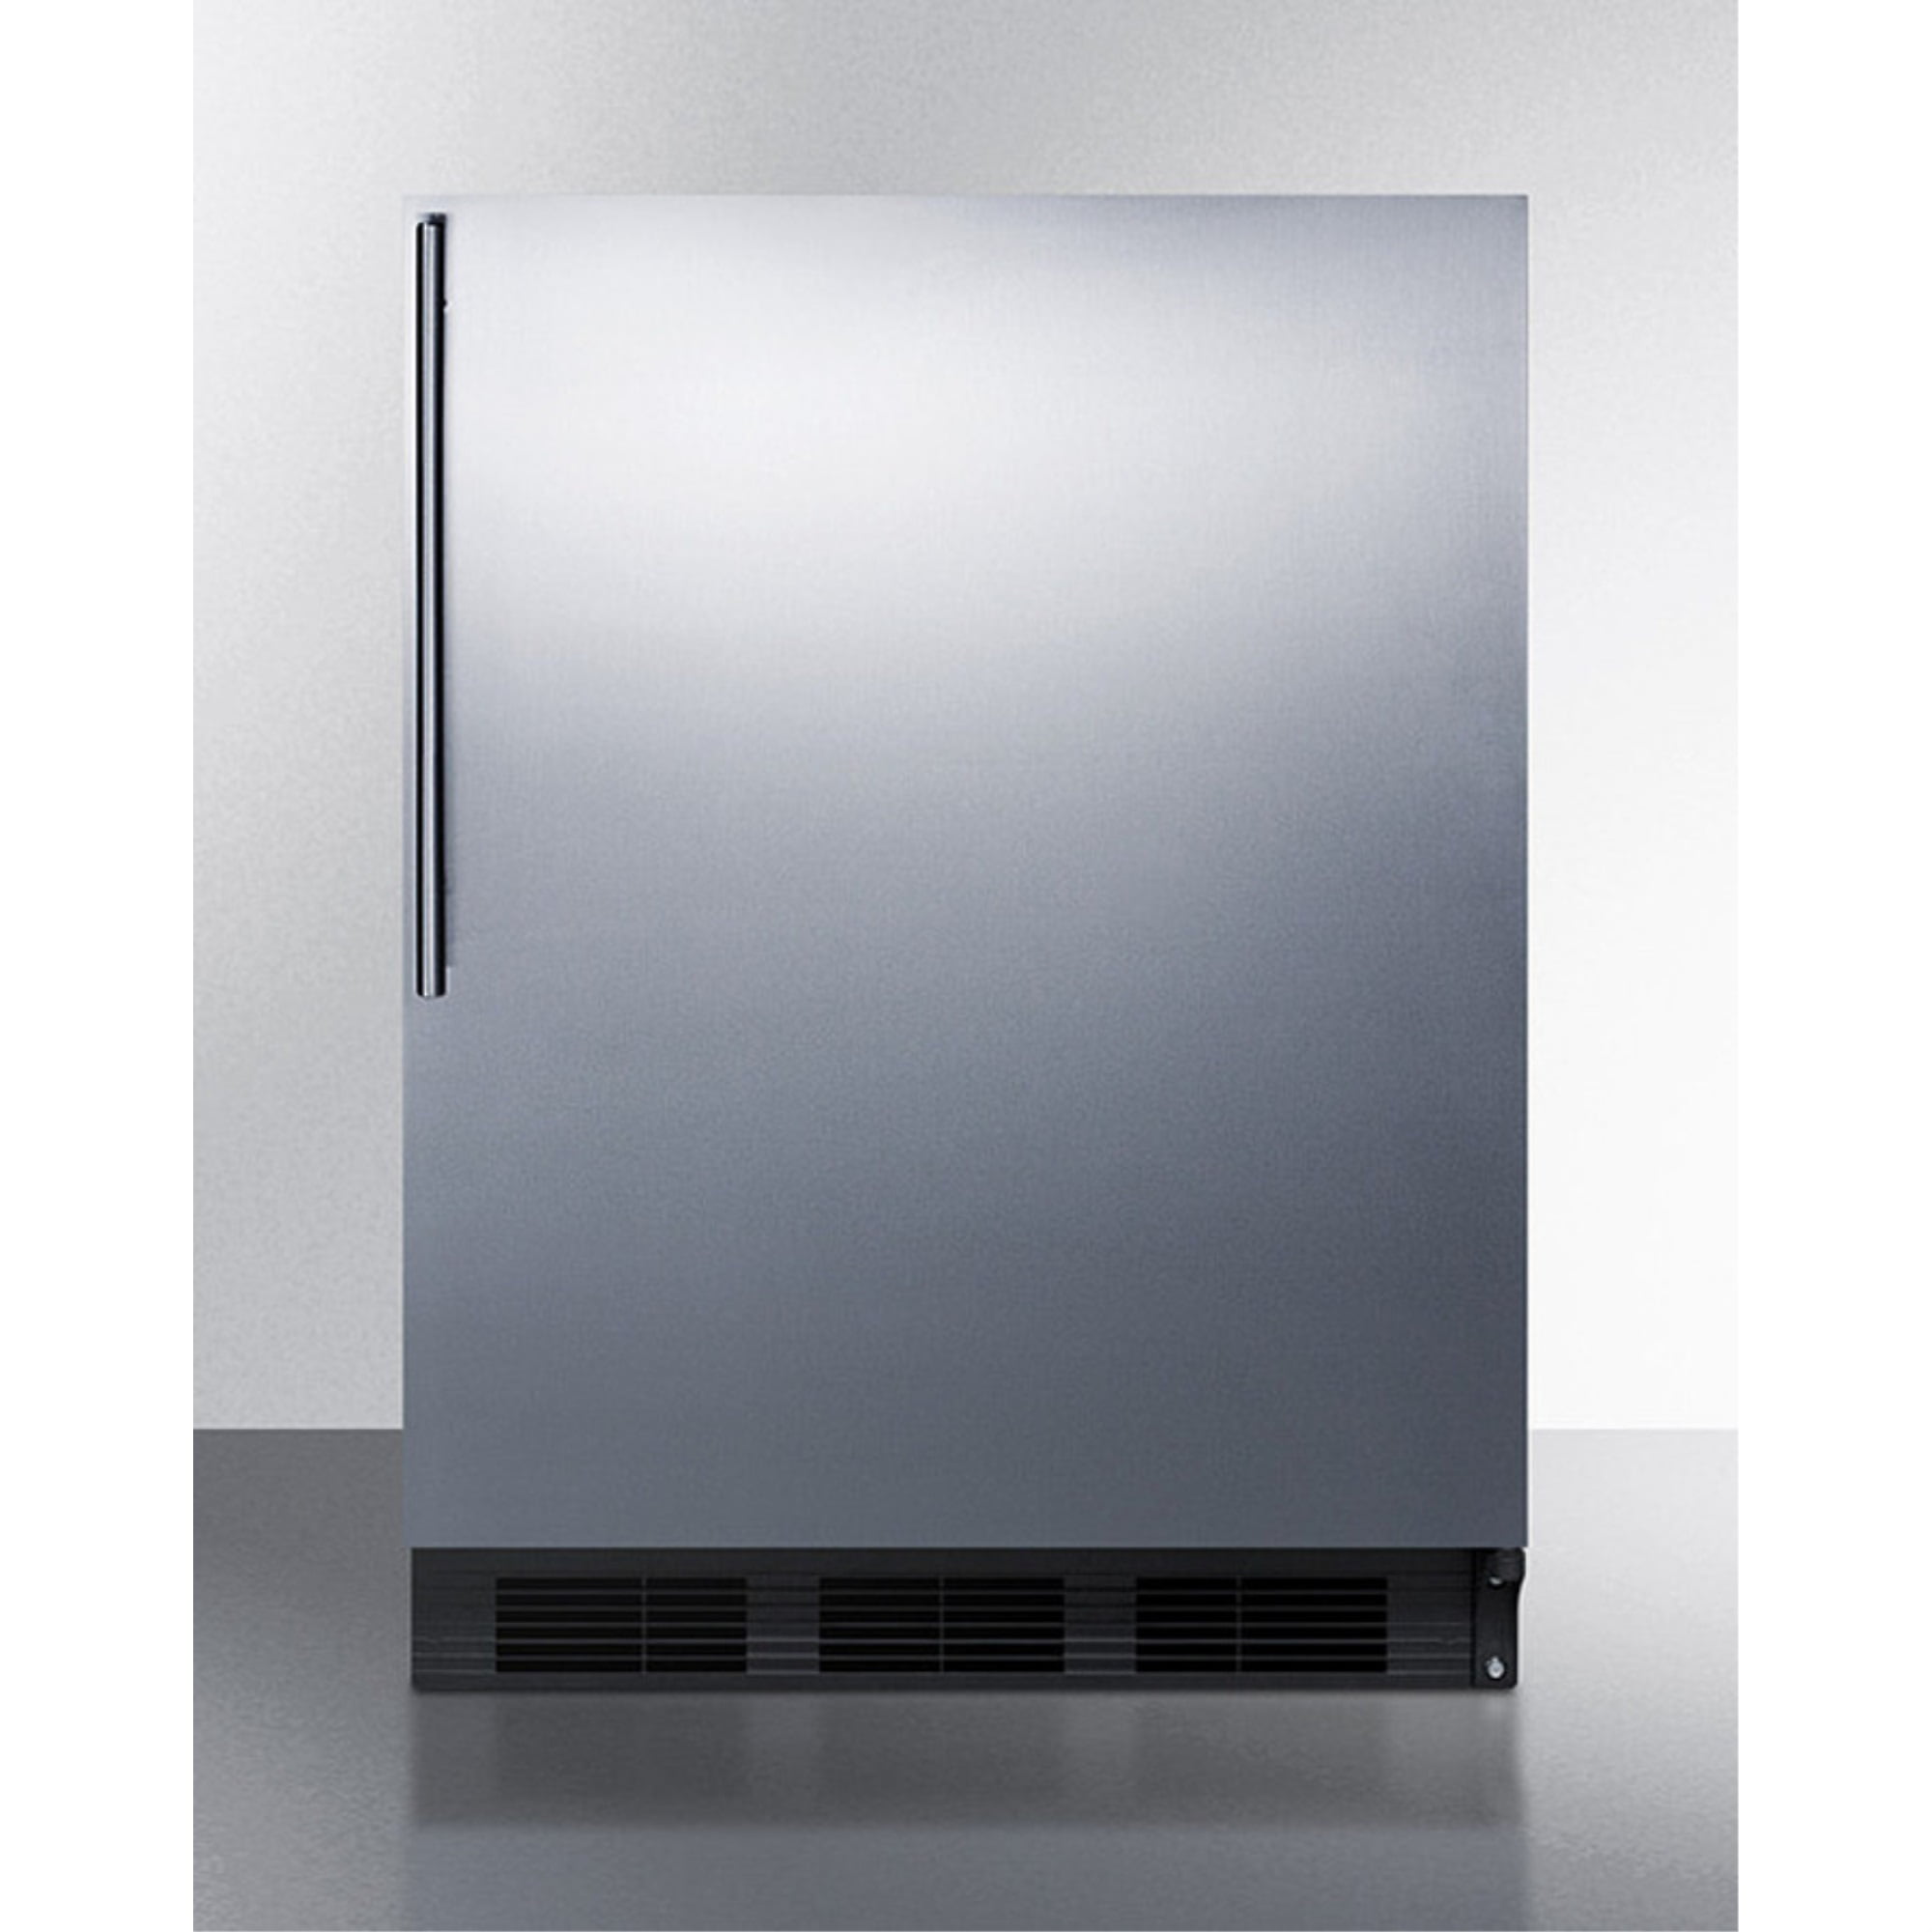 RCA 7.5 Cu. ft. Top Freezer Refrigerator, RFR741 (Black)